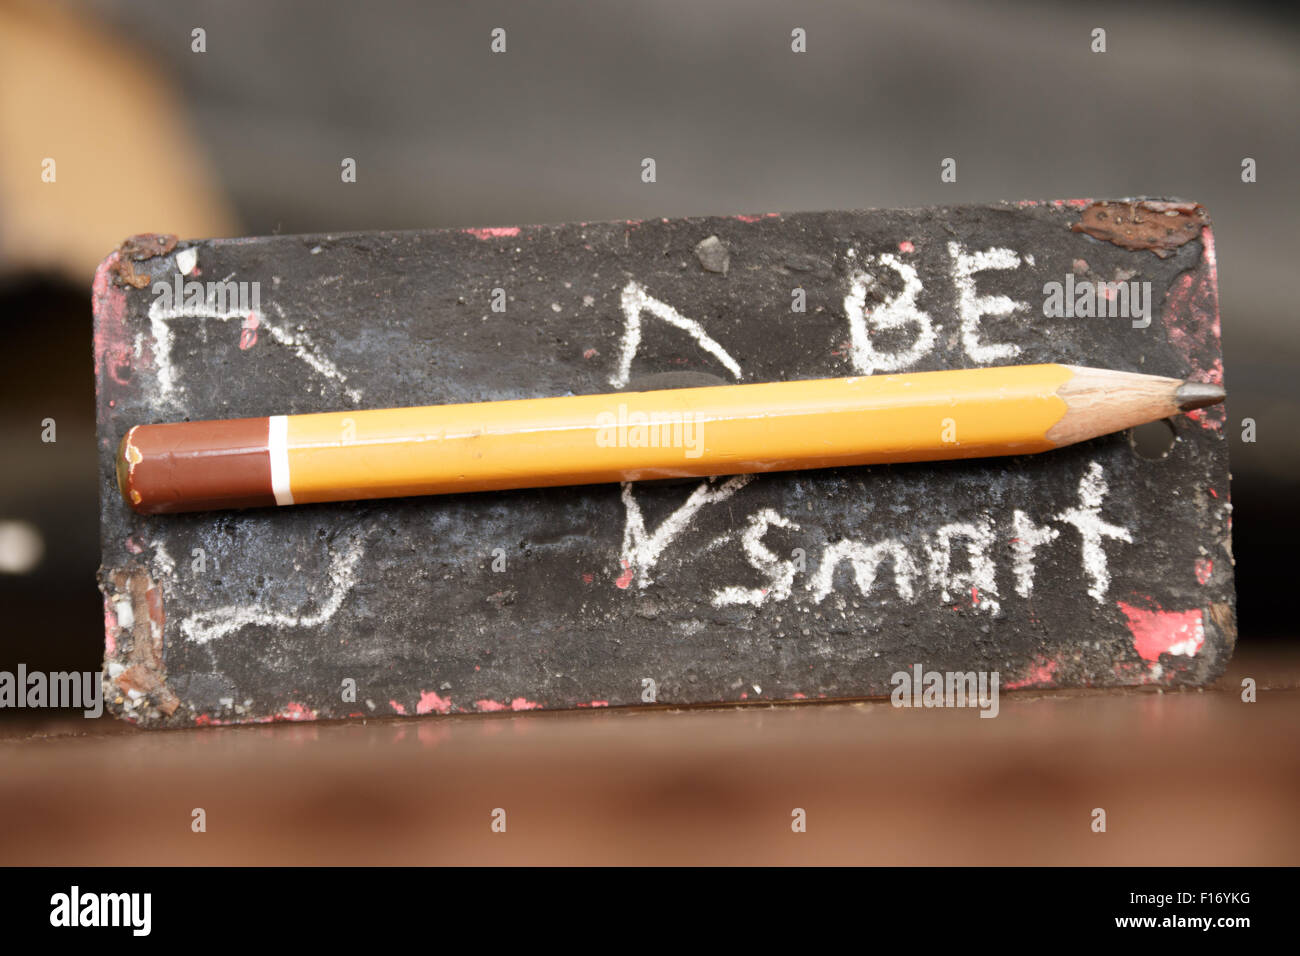 Seien Sie clever. Inschrift in Kreide und Bleistift - Rakete. Das Tag mit der Inschrift auf dem Schreibtisch. Stockfoto